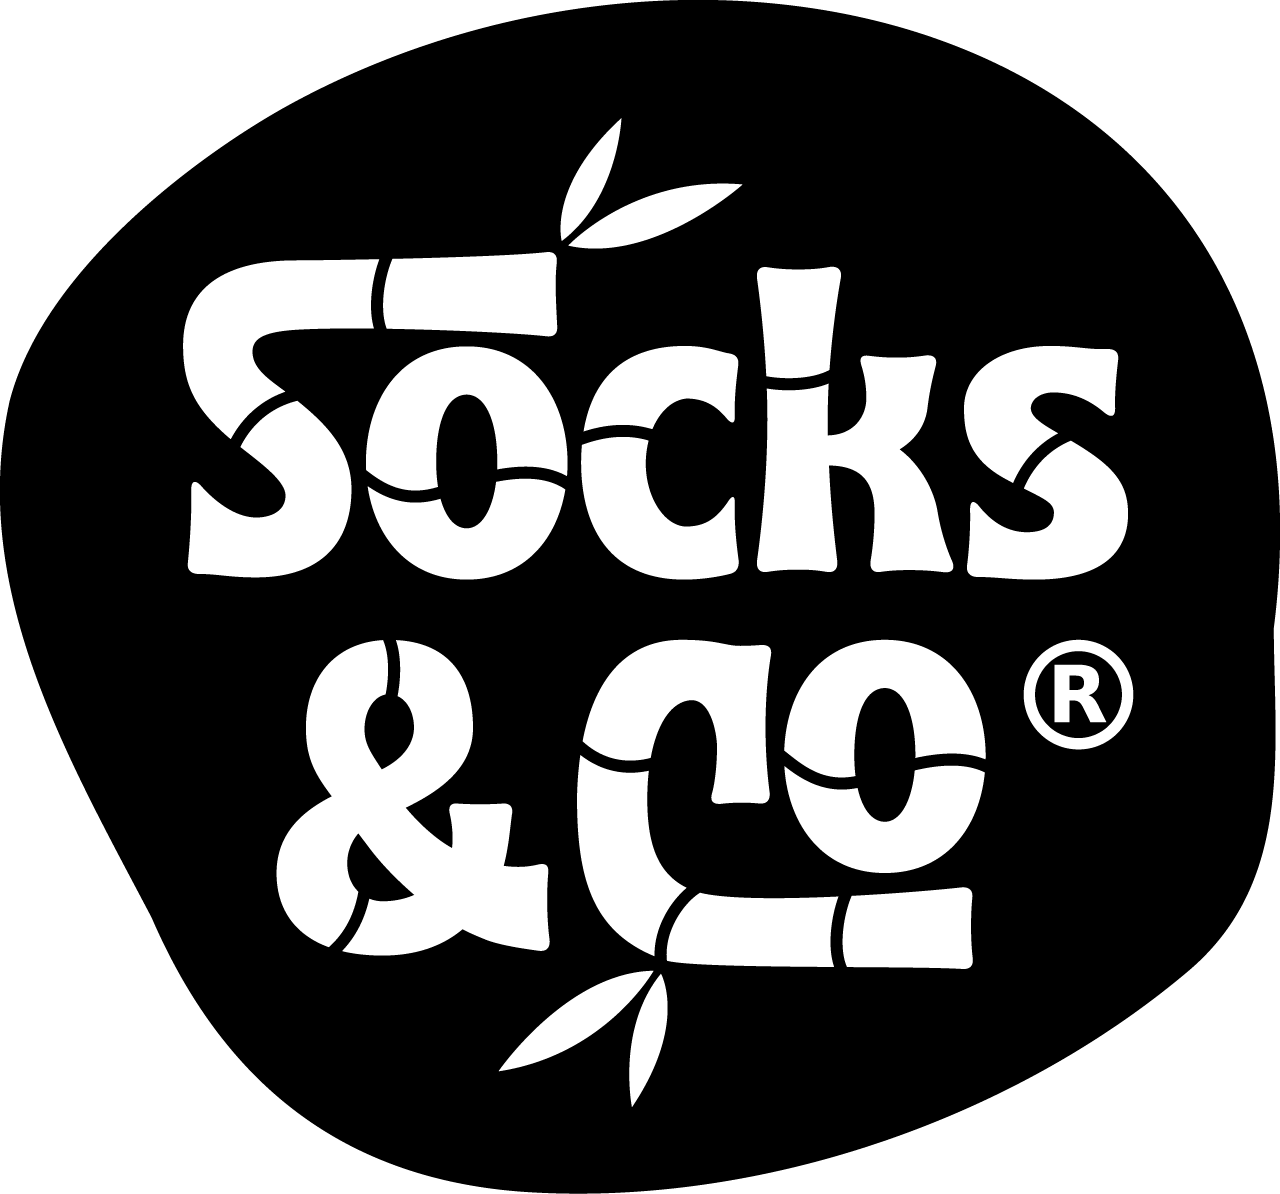 Socks en Co